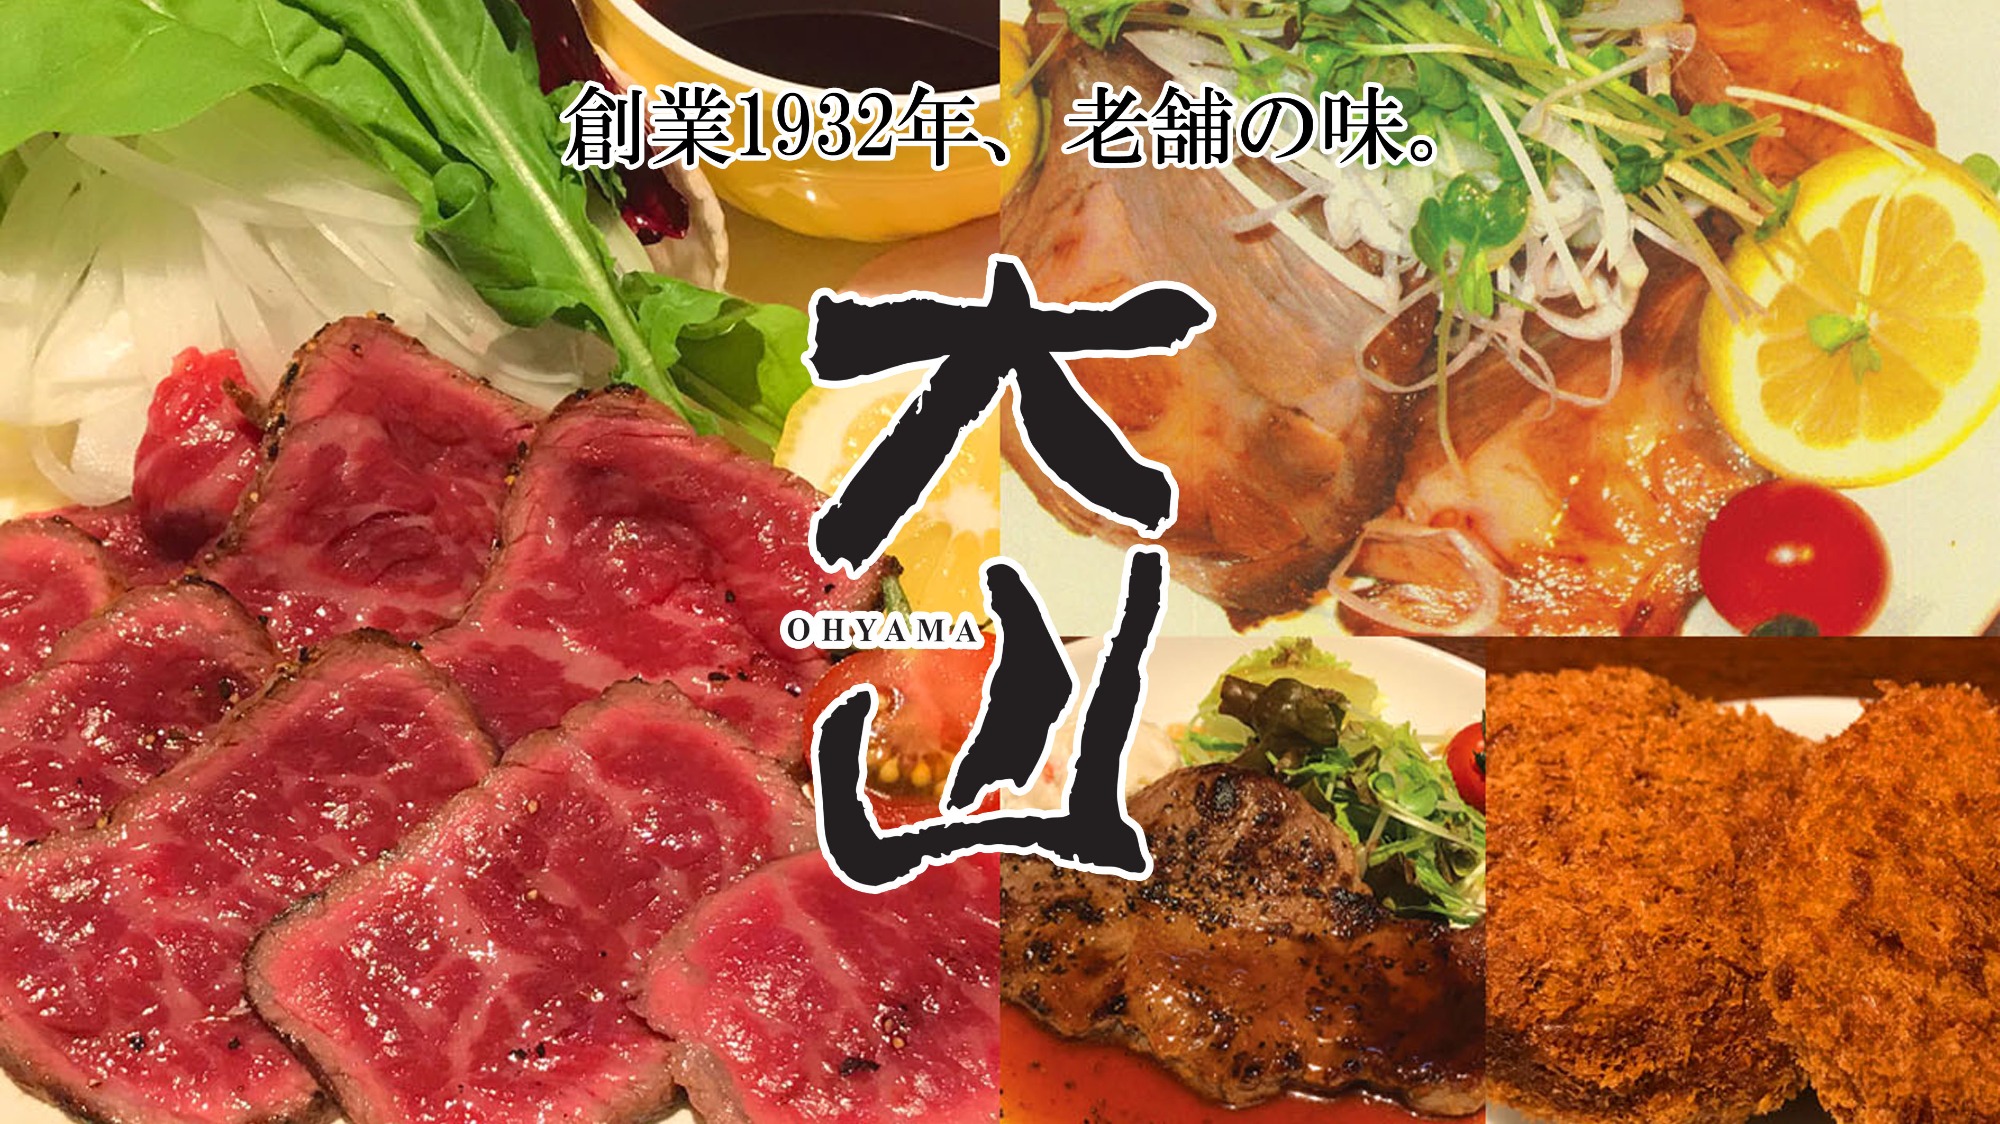 肉の大山 上野店 株式会社大山 肉の大山のホームページ